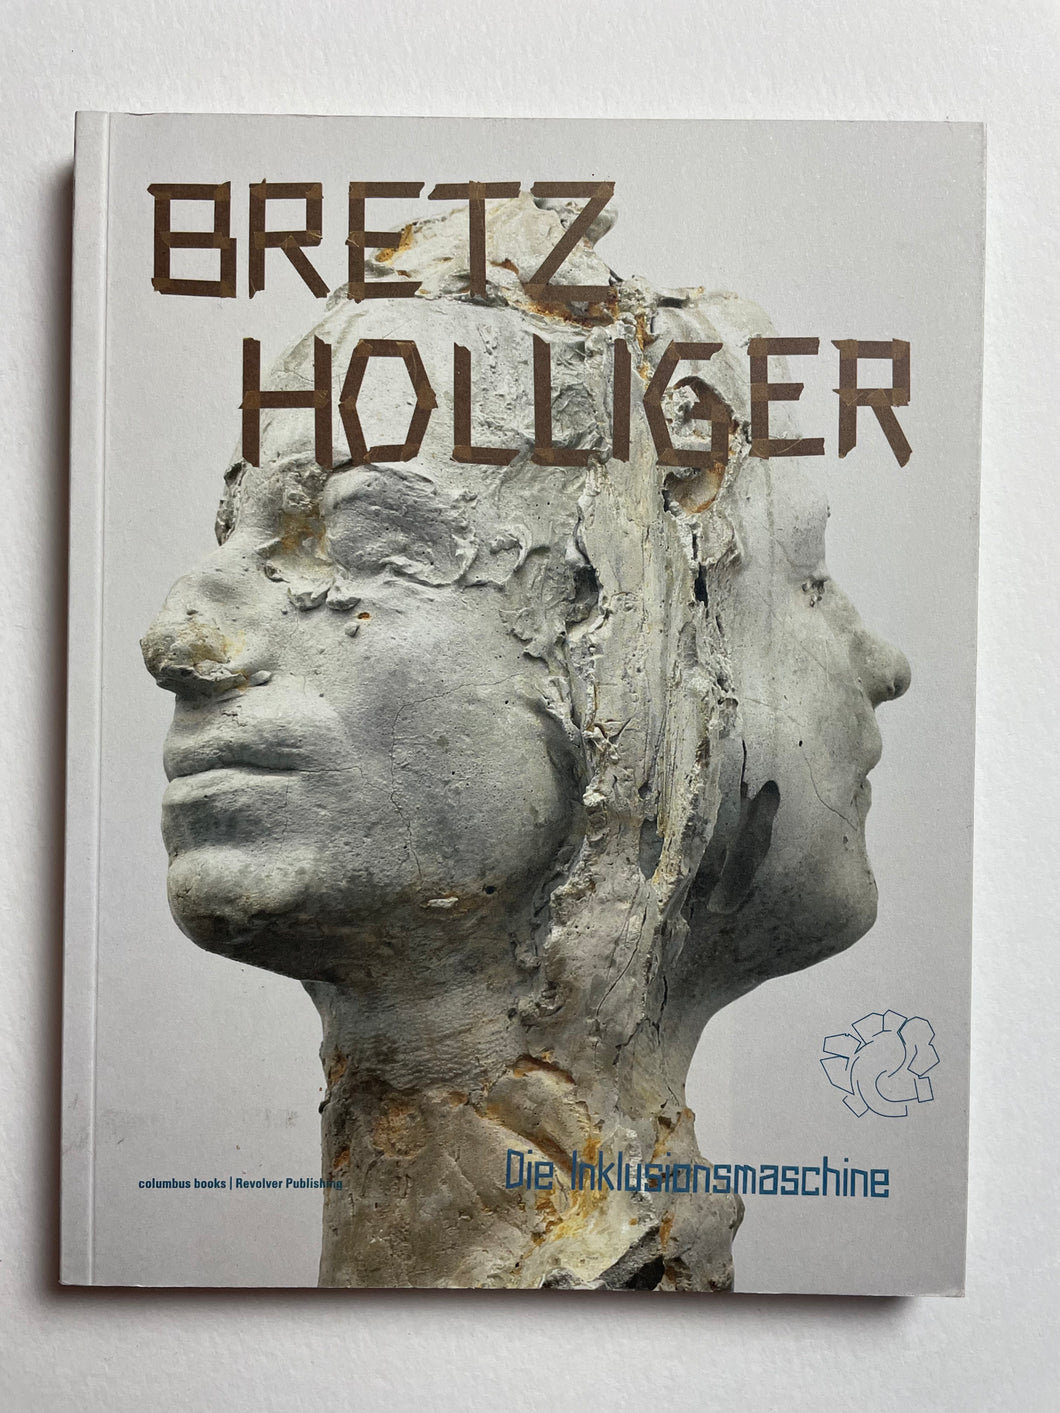 Bretz Hollinger (Revolver Publishing)